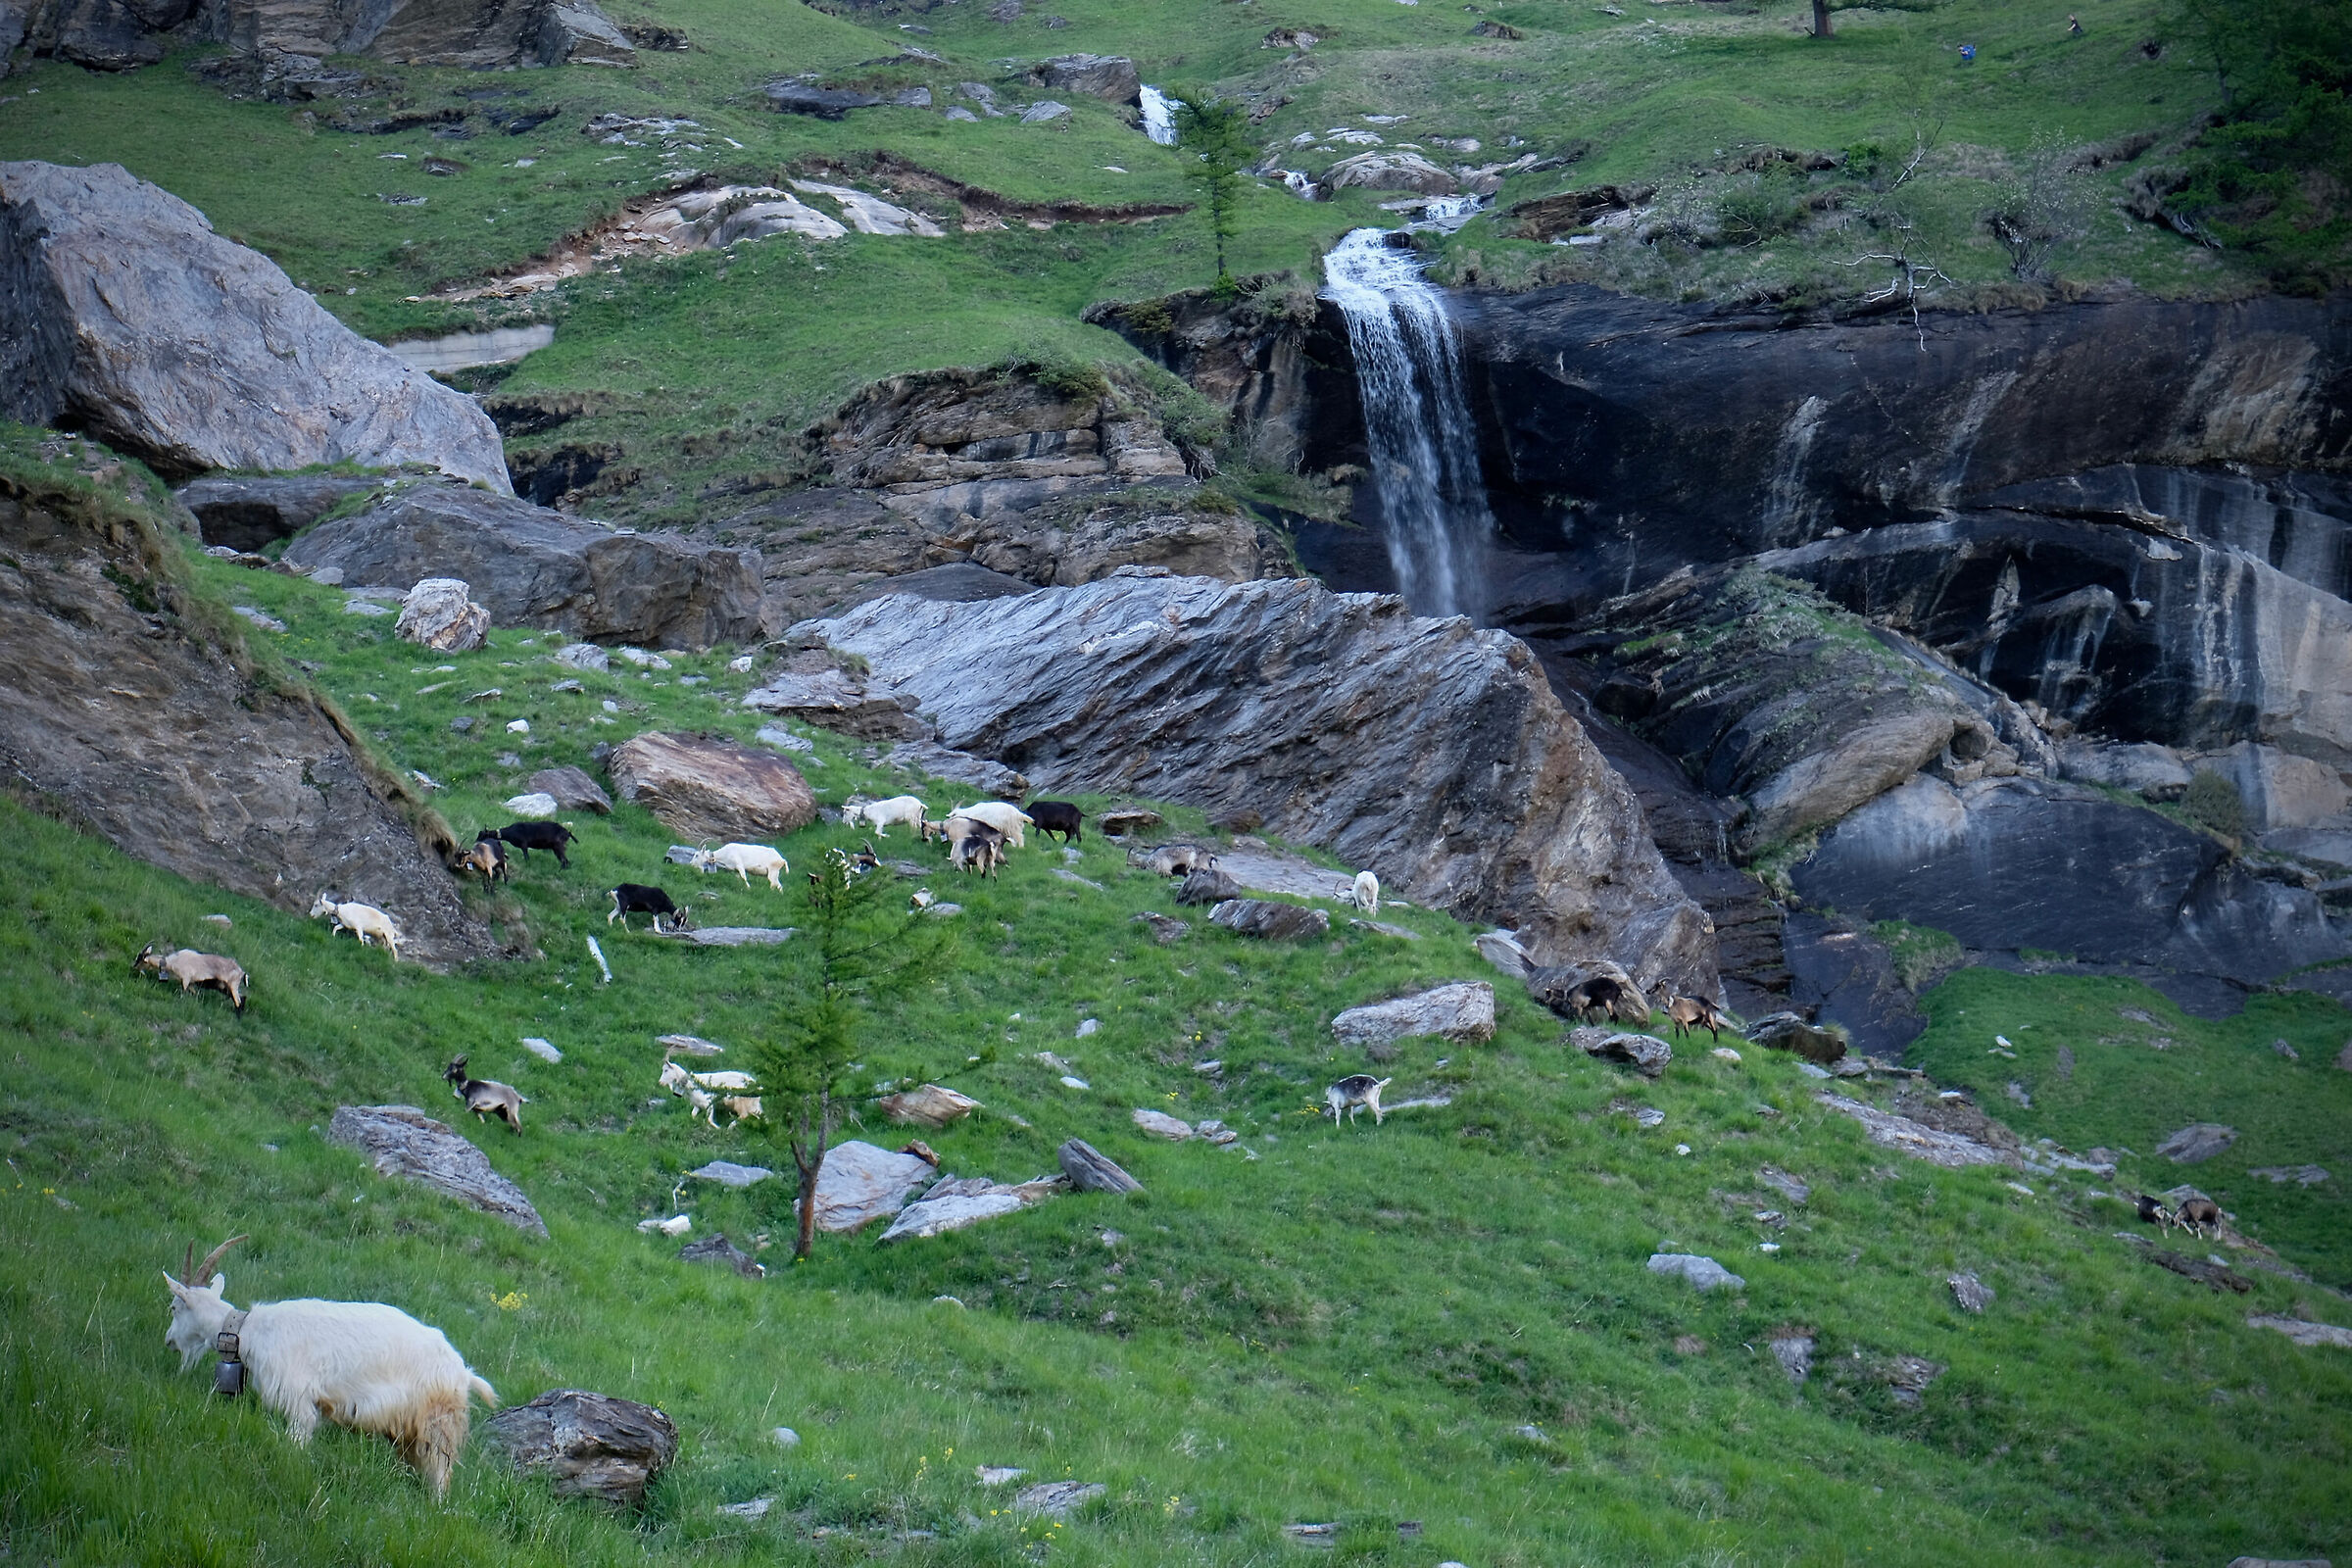 Between goat valleys and waterfalls...